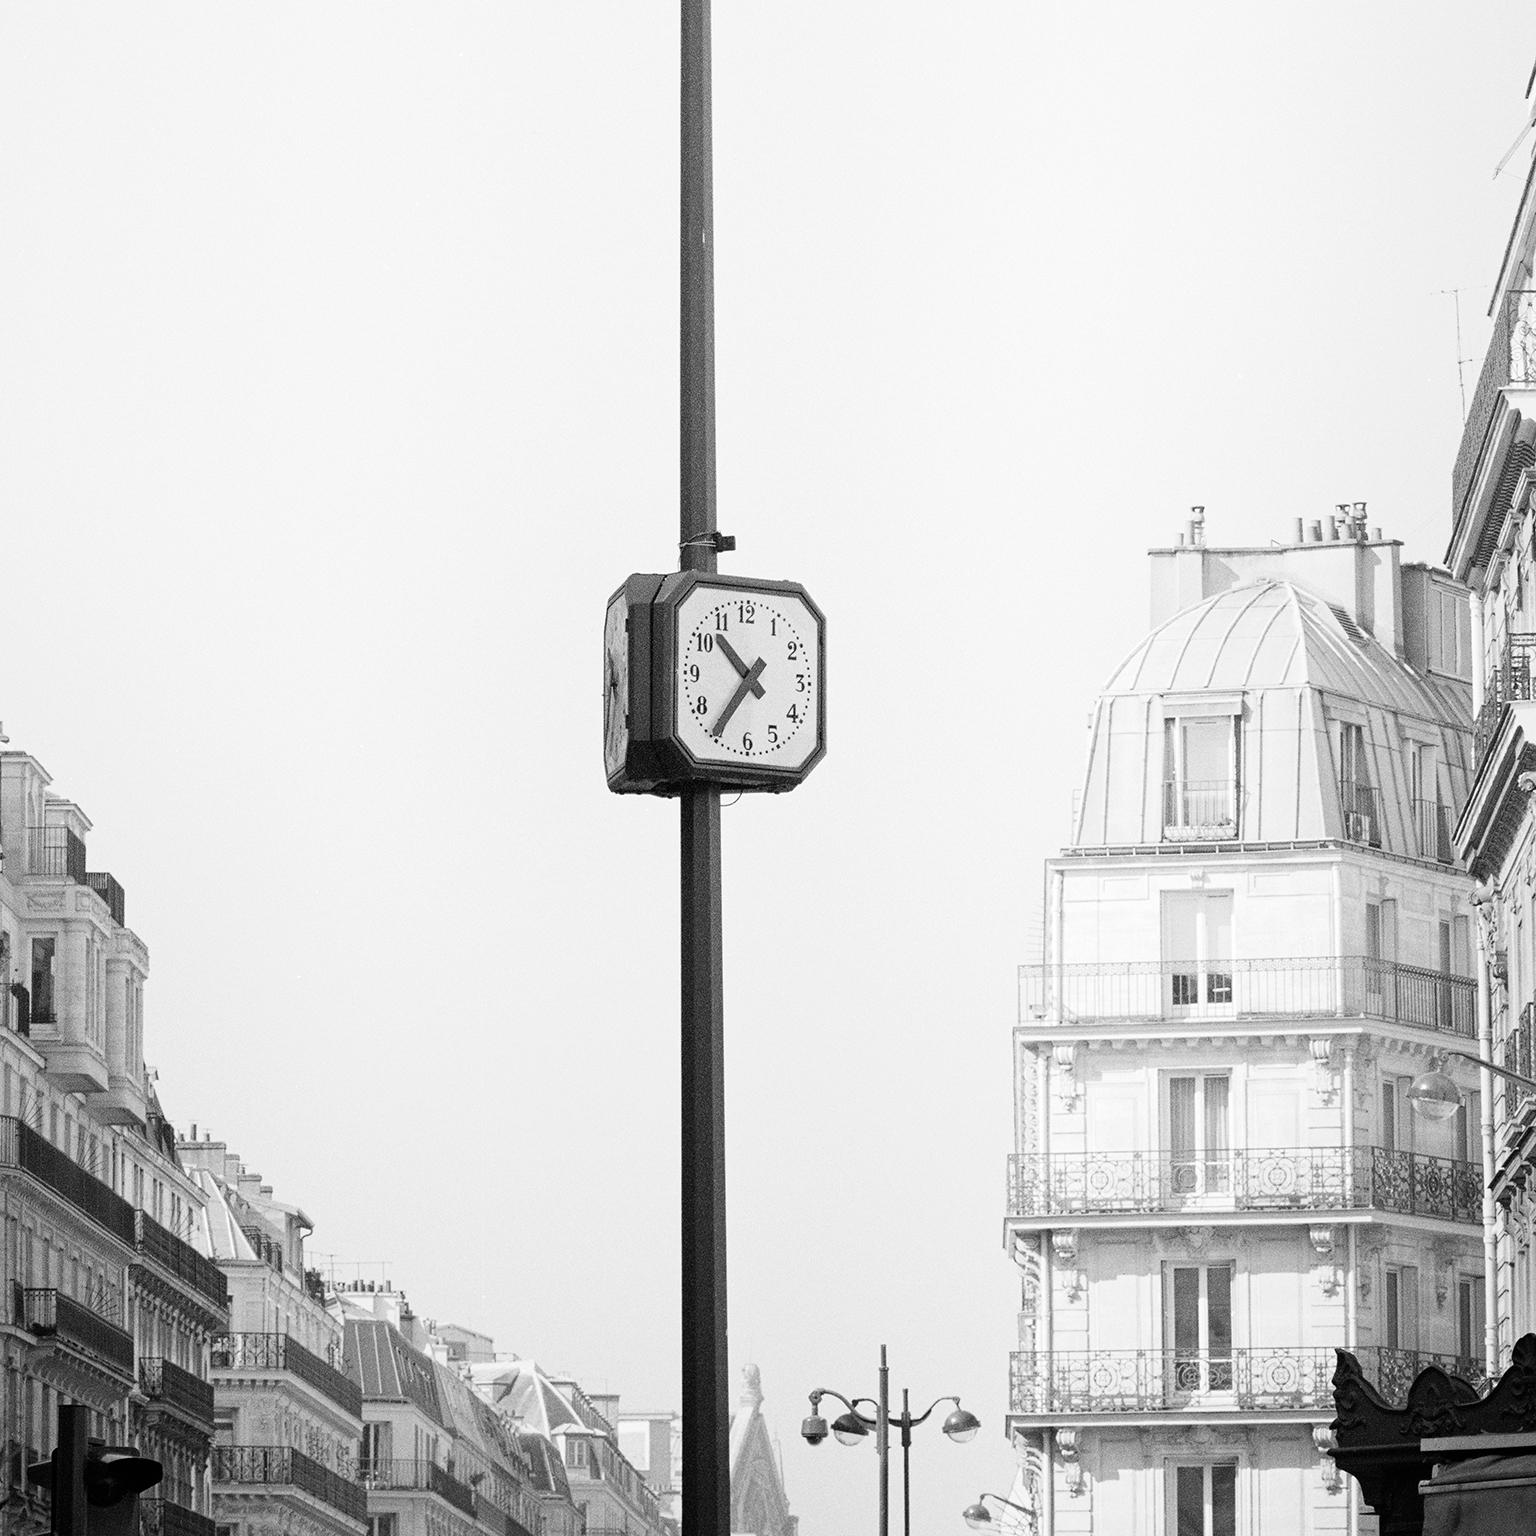 le Parisien, Paris, Frankreich, zeitgenössische Schwarz-Weiß-Fotografie, Landschaften – Photograph von Gerald Berghammer, Ina Forstinger